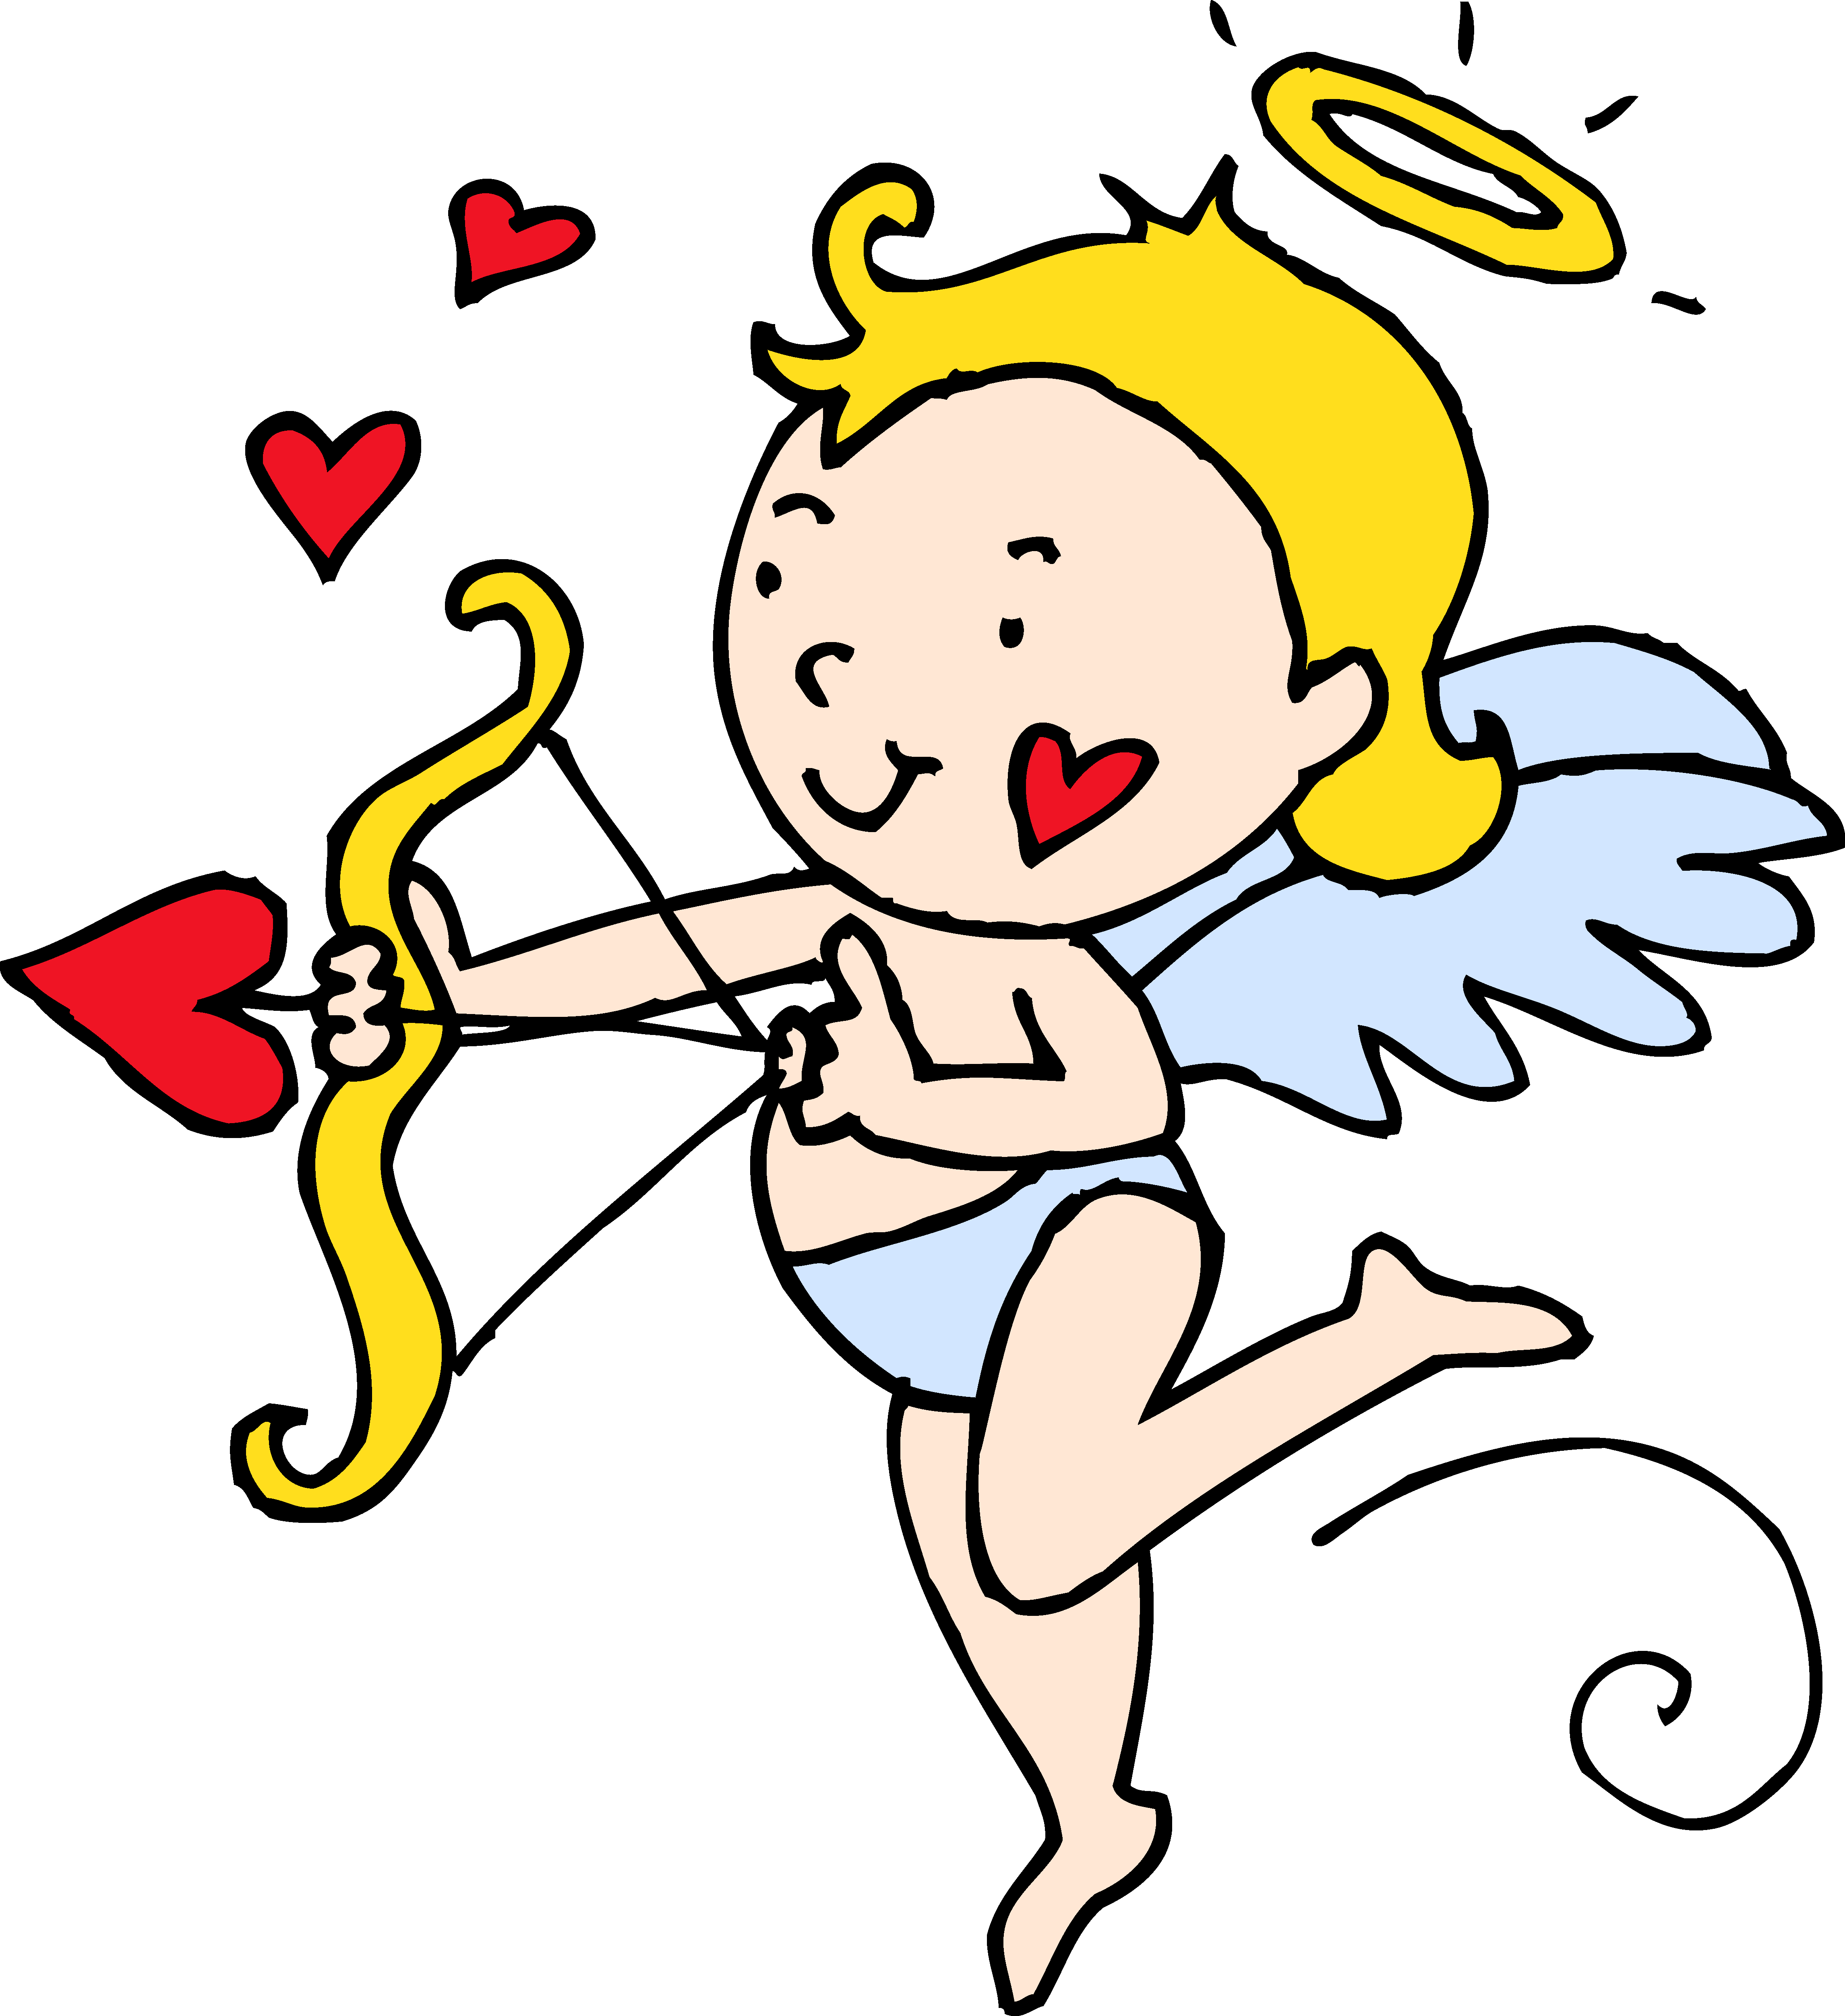 Cupid origin